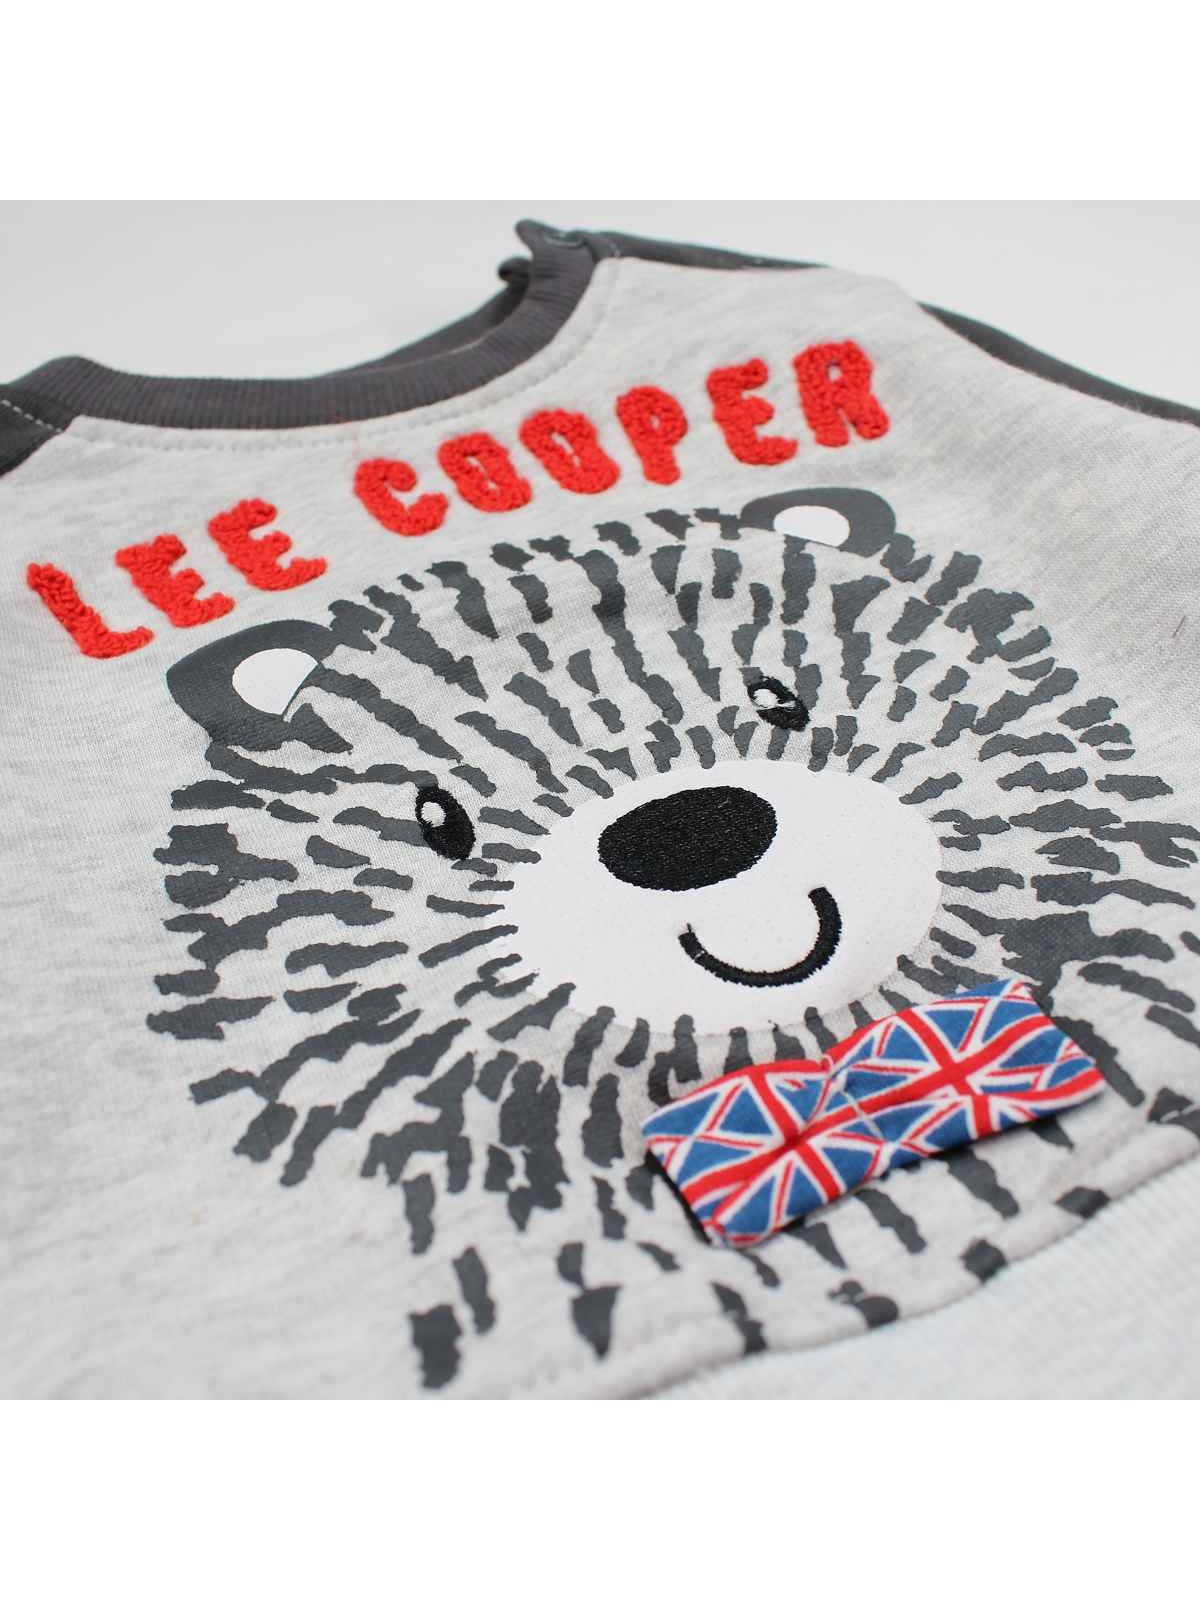 Ensemble bebe Lee Cooper